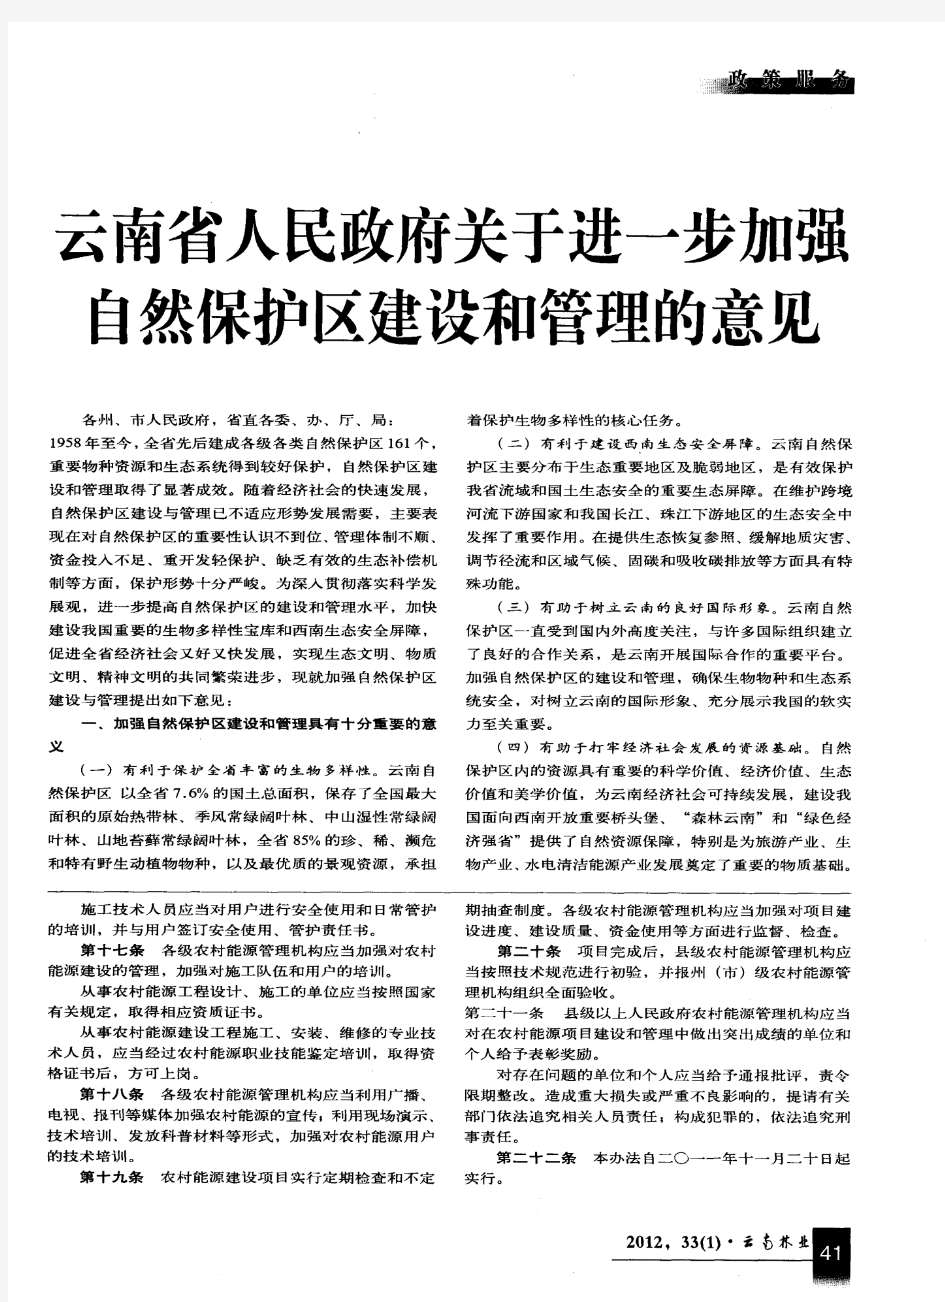 云南省人民政府关于进一步加强自然保护区建设和管理的意见